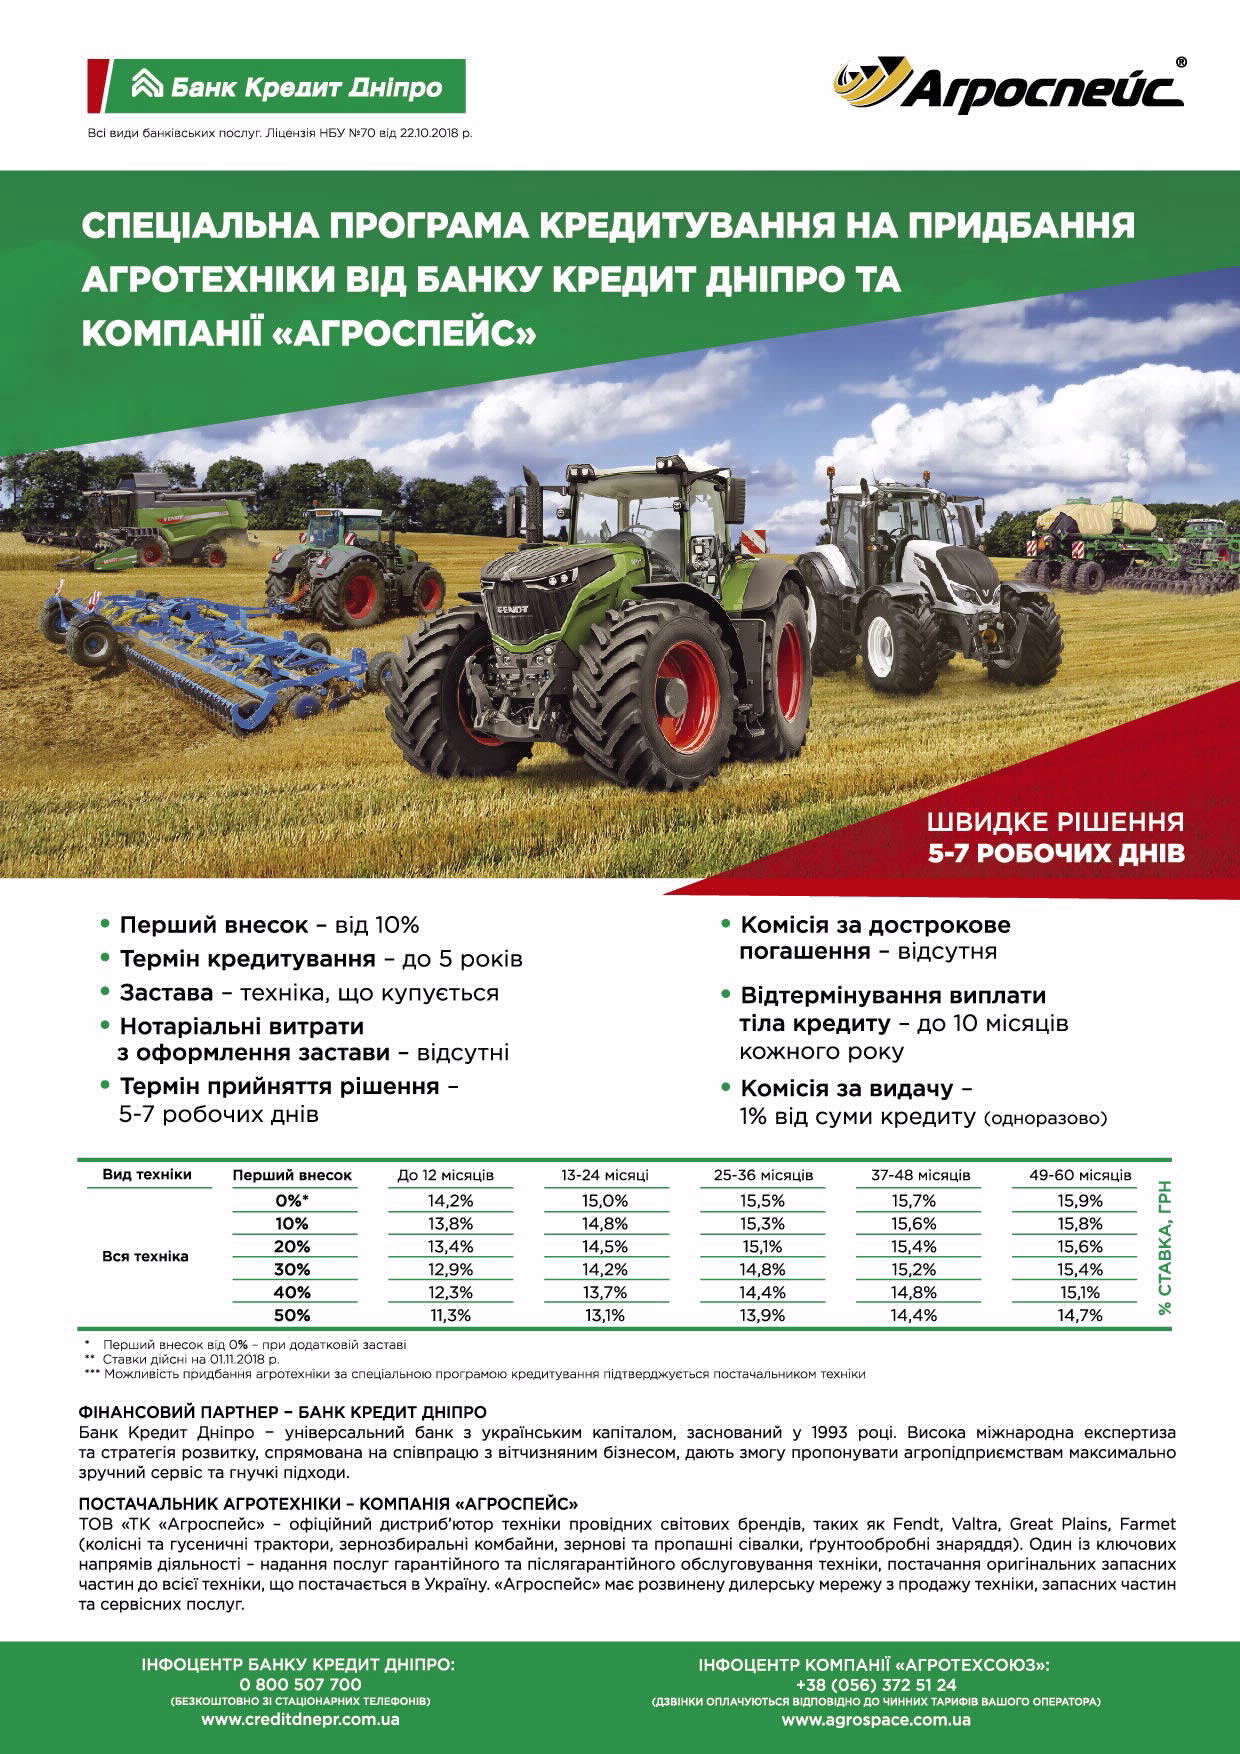 Банк Кредит Дніпро і компанія «Агроспейс» у рамках партнерської програми 